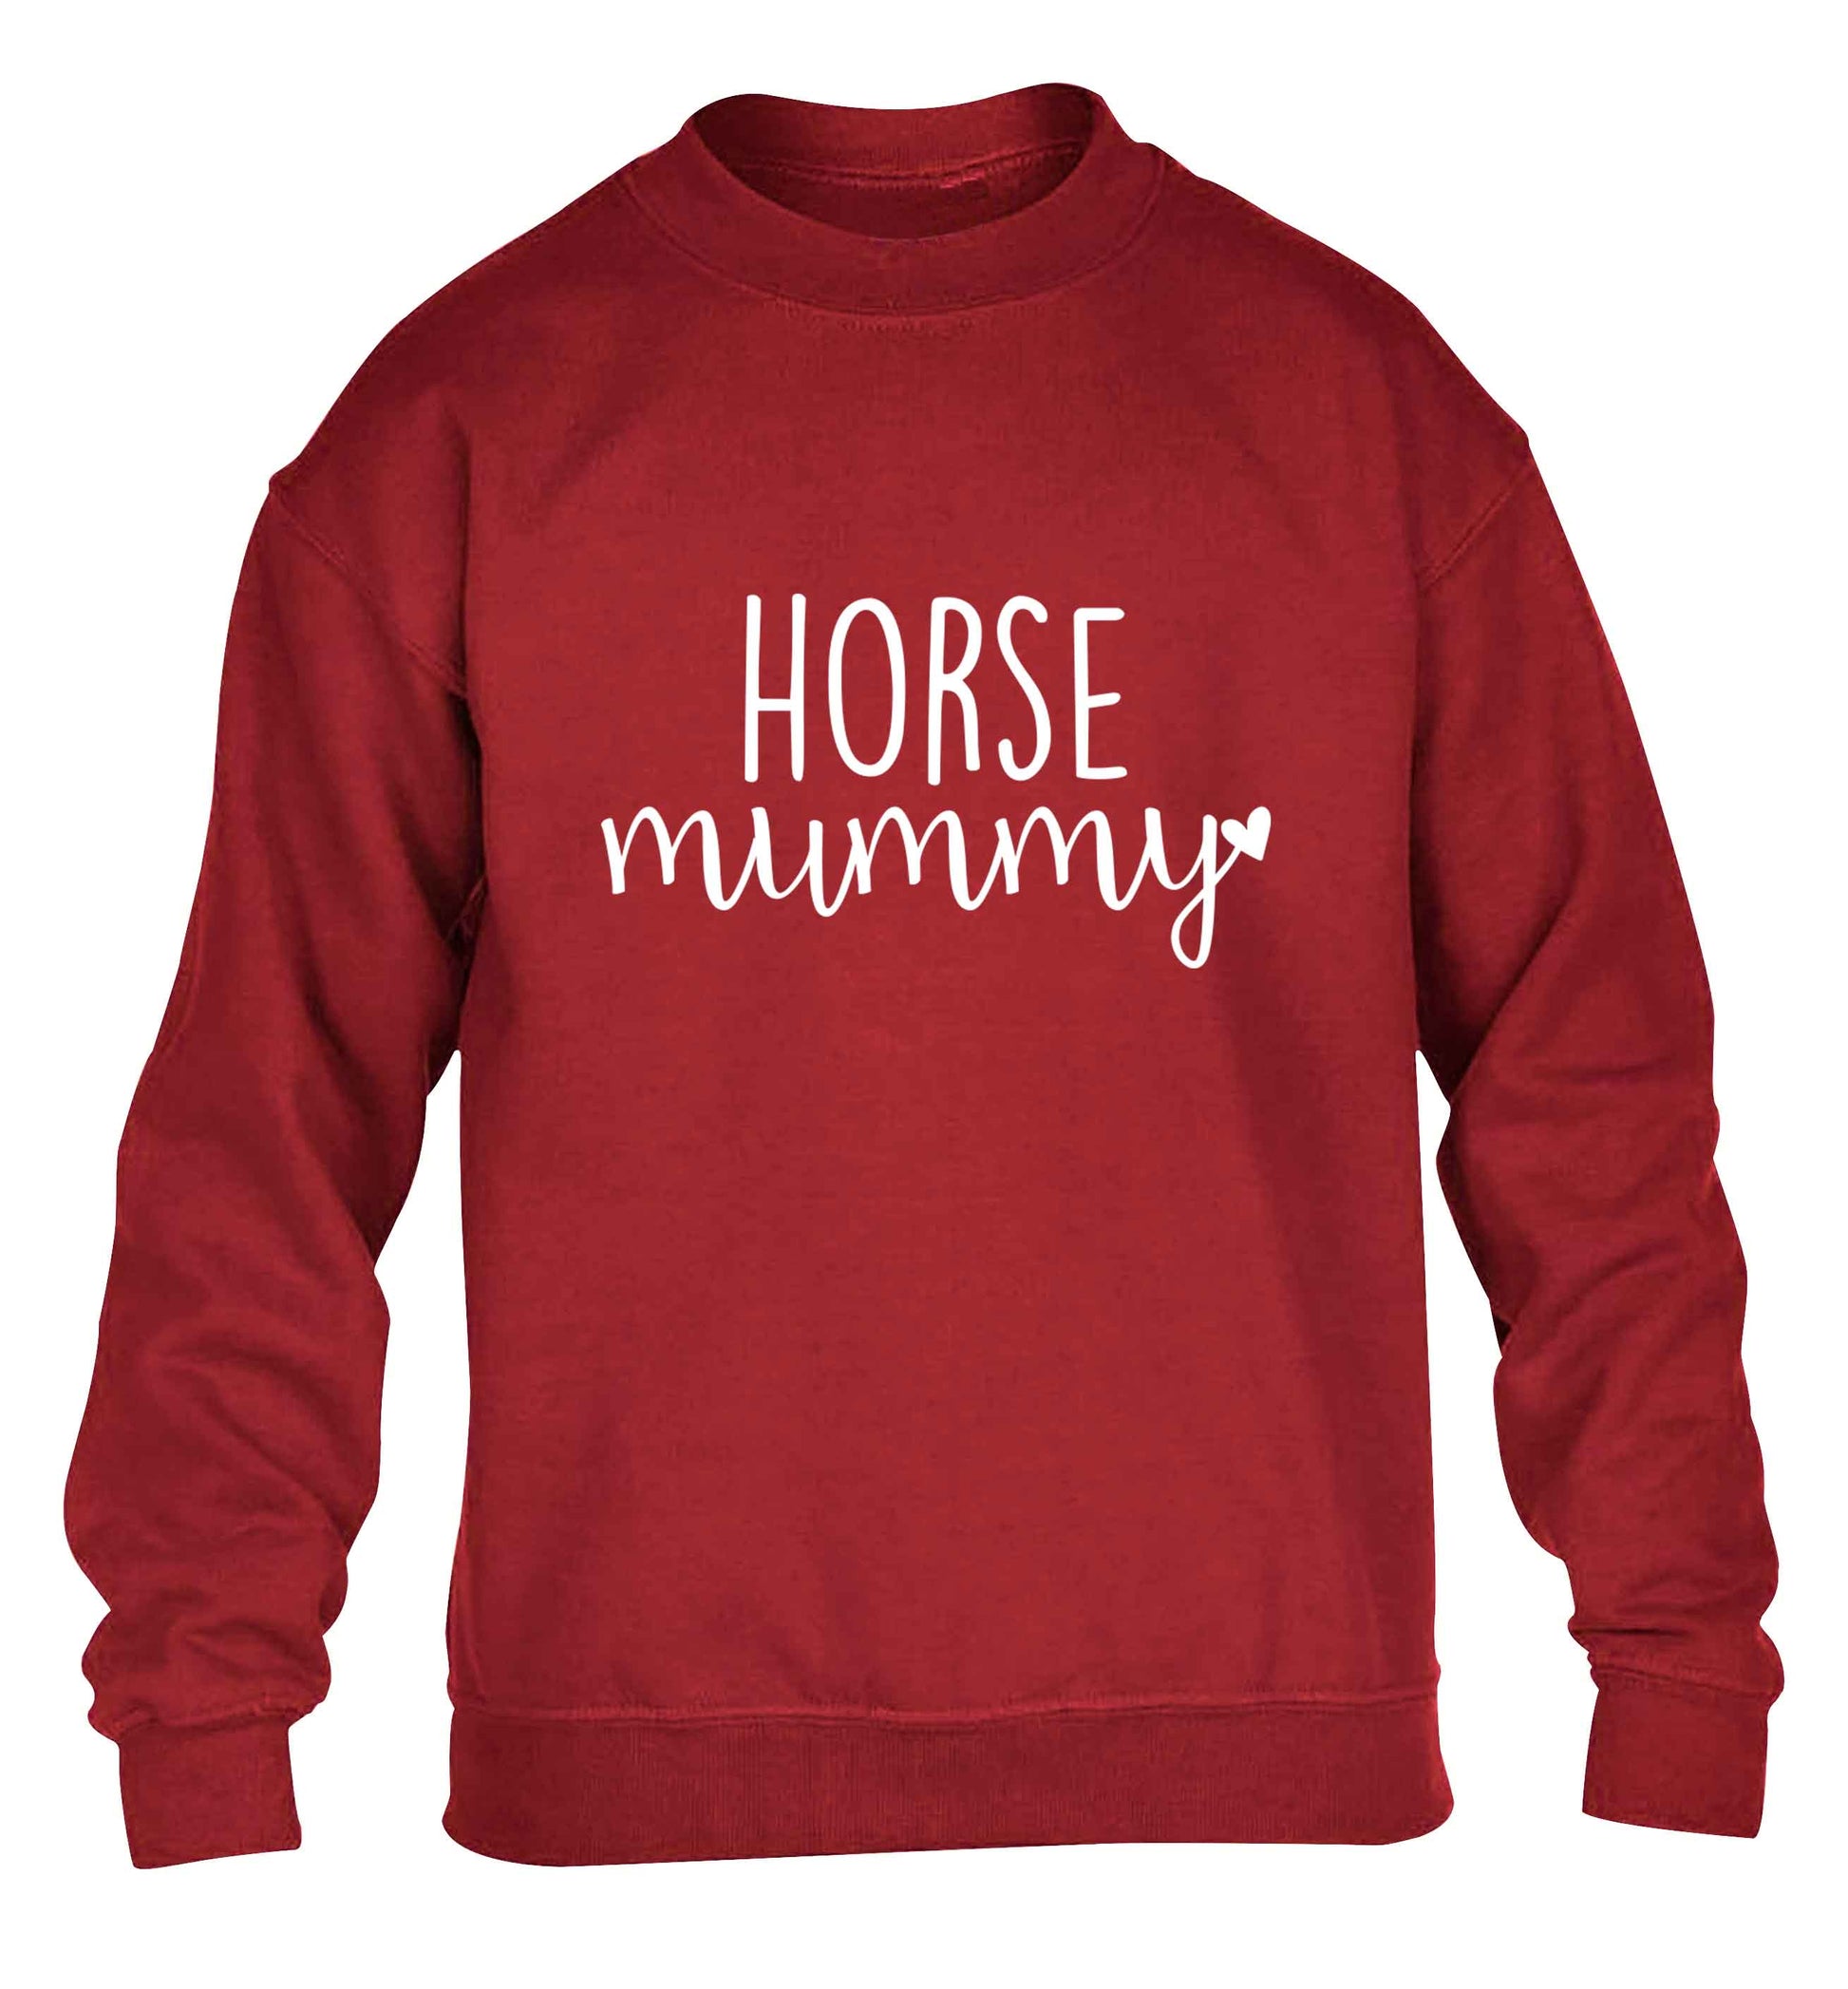 Horse mummy children's grey sweater 12-13 Years